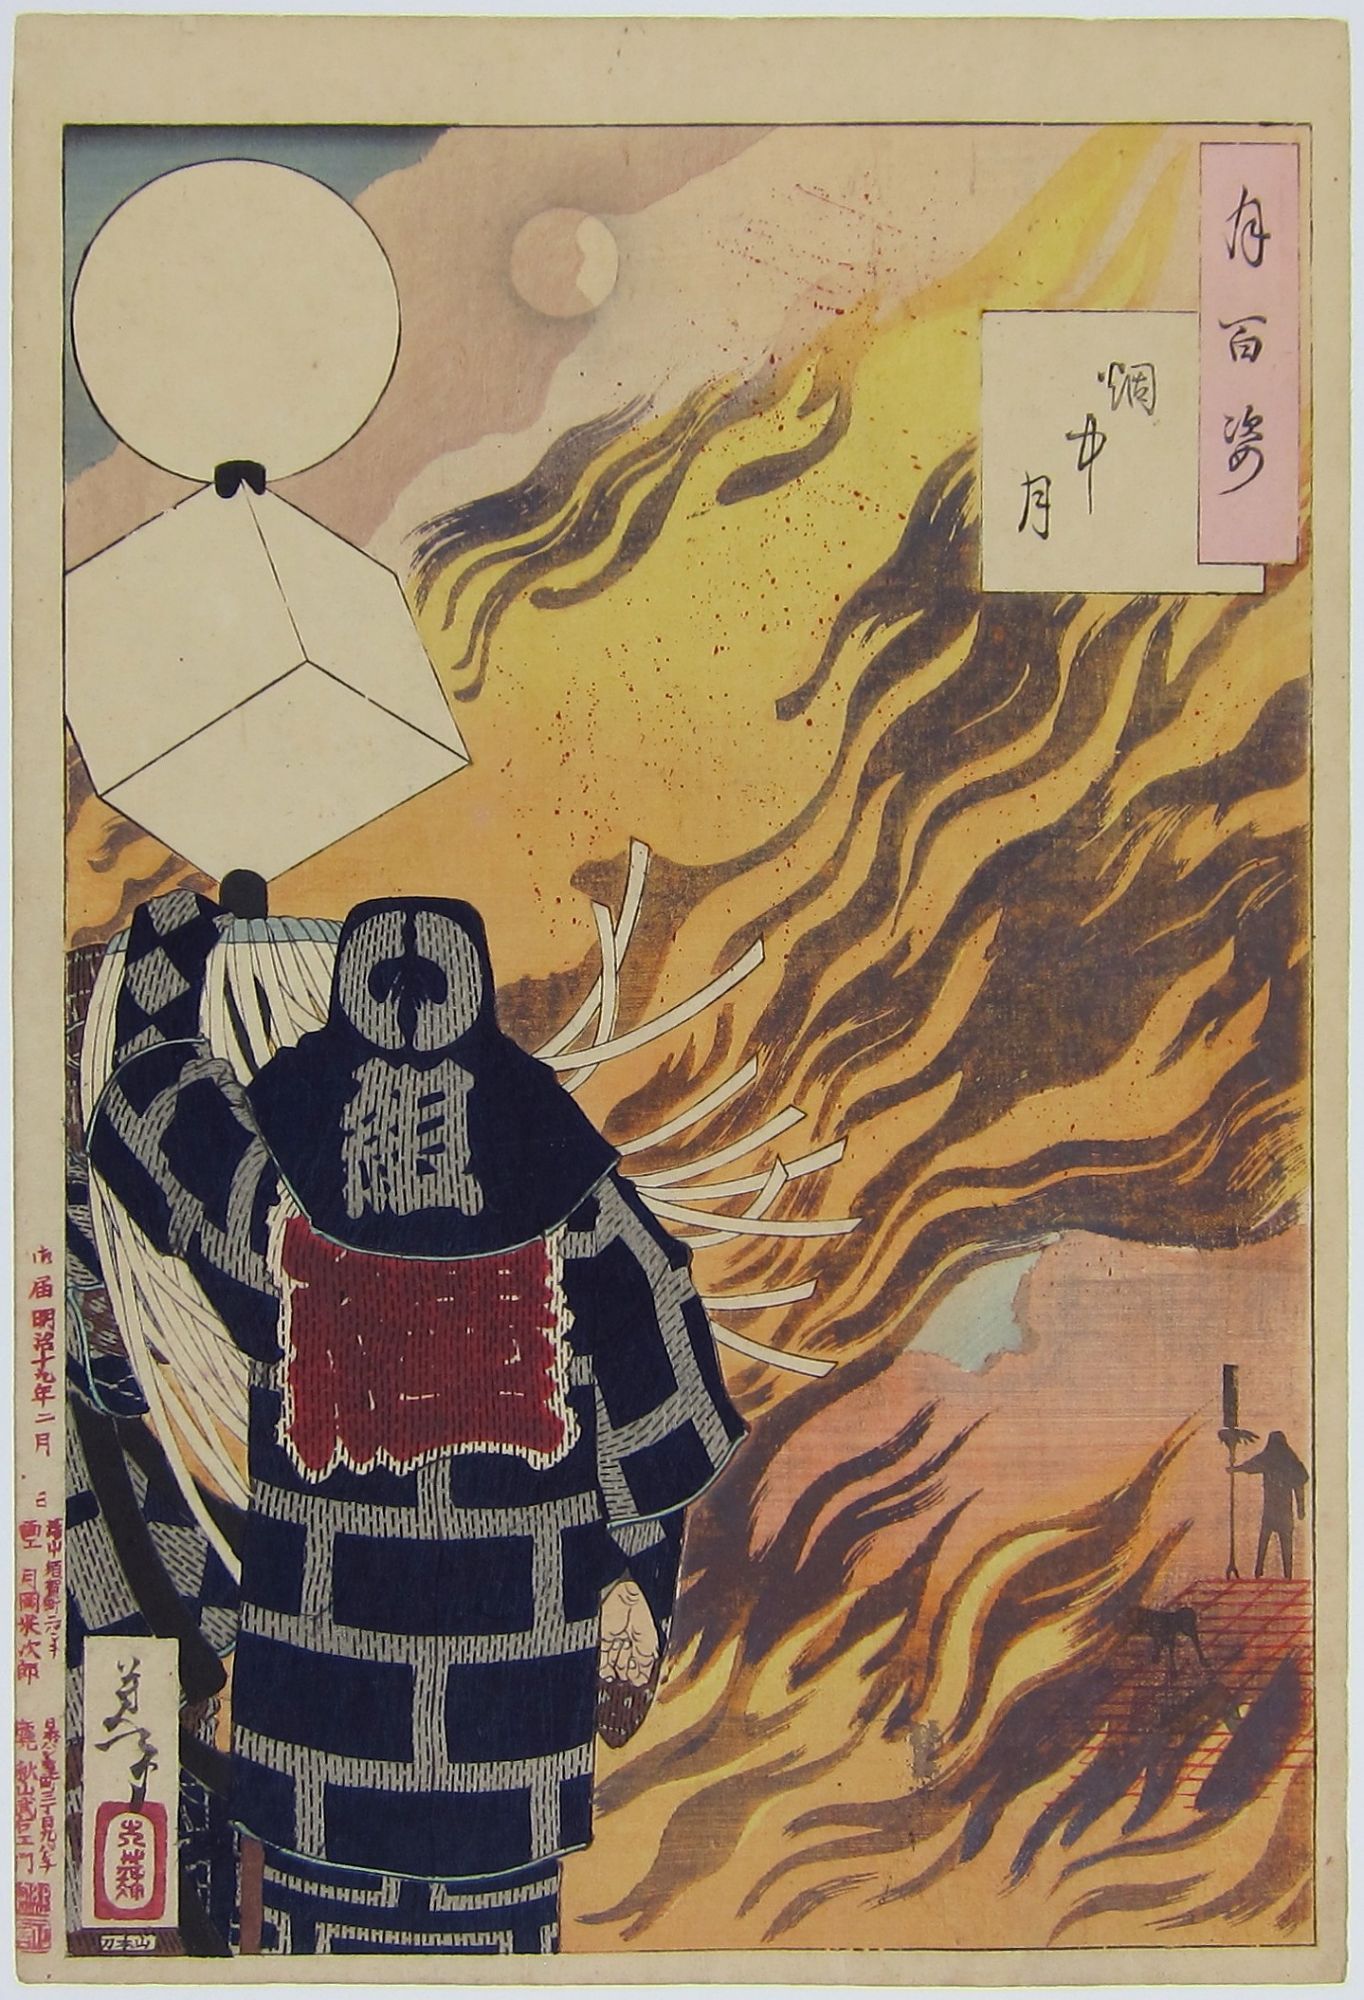 Moon and Smoke. Enchû no tsuki. 2/1886